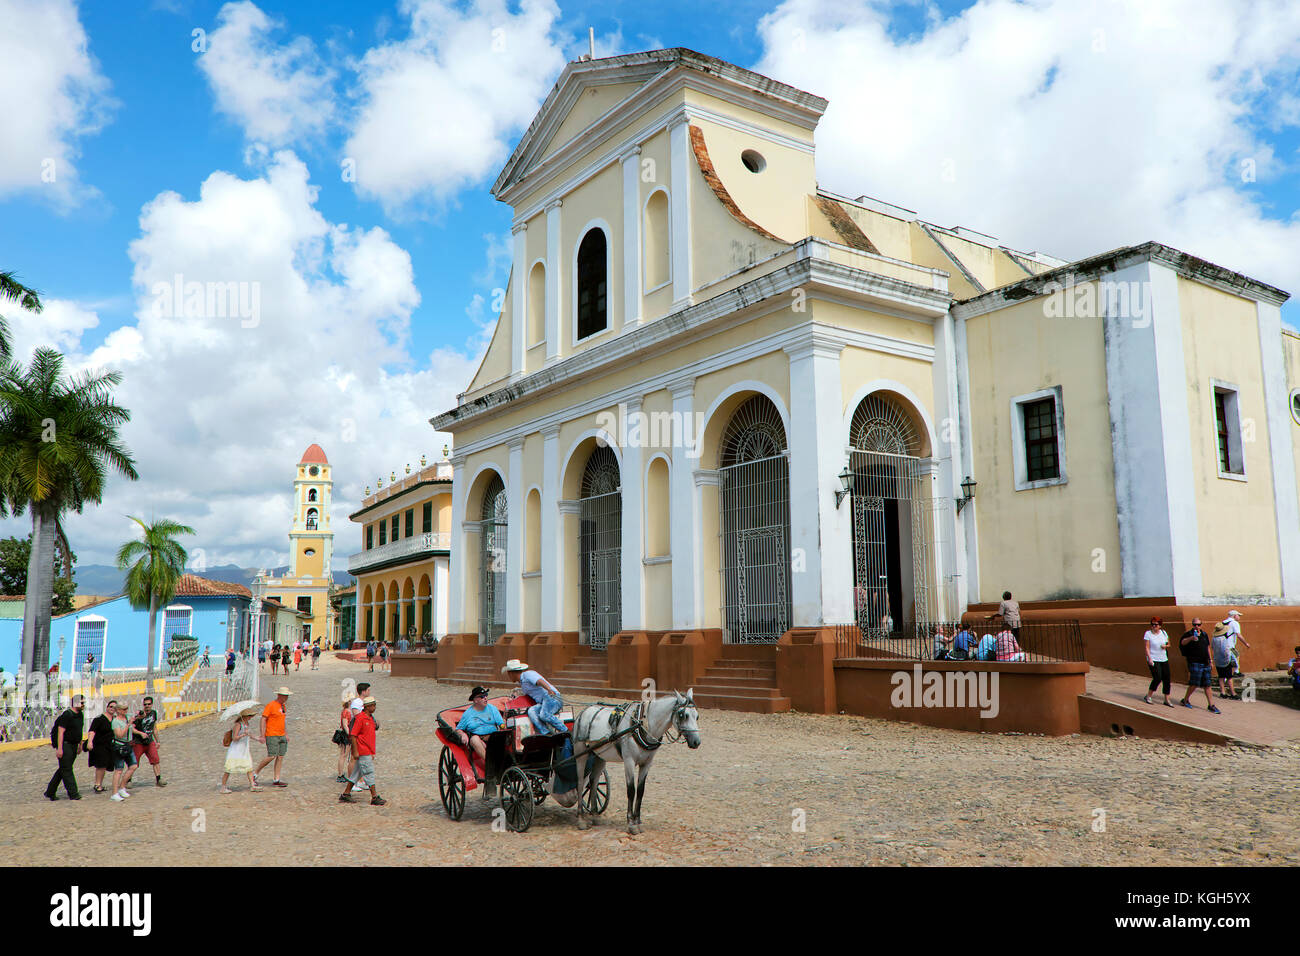 Église paroissiale de l'église de la Santisima Trinidad, la Plaza Mayor, Trinidad, province de Sancti Spíritus, Cuba Banque D'Images